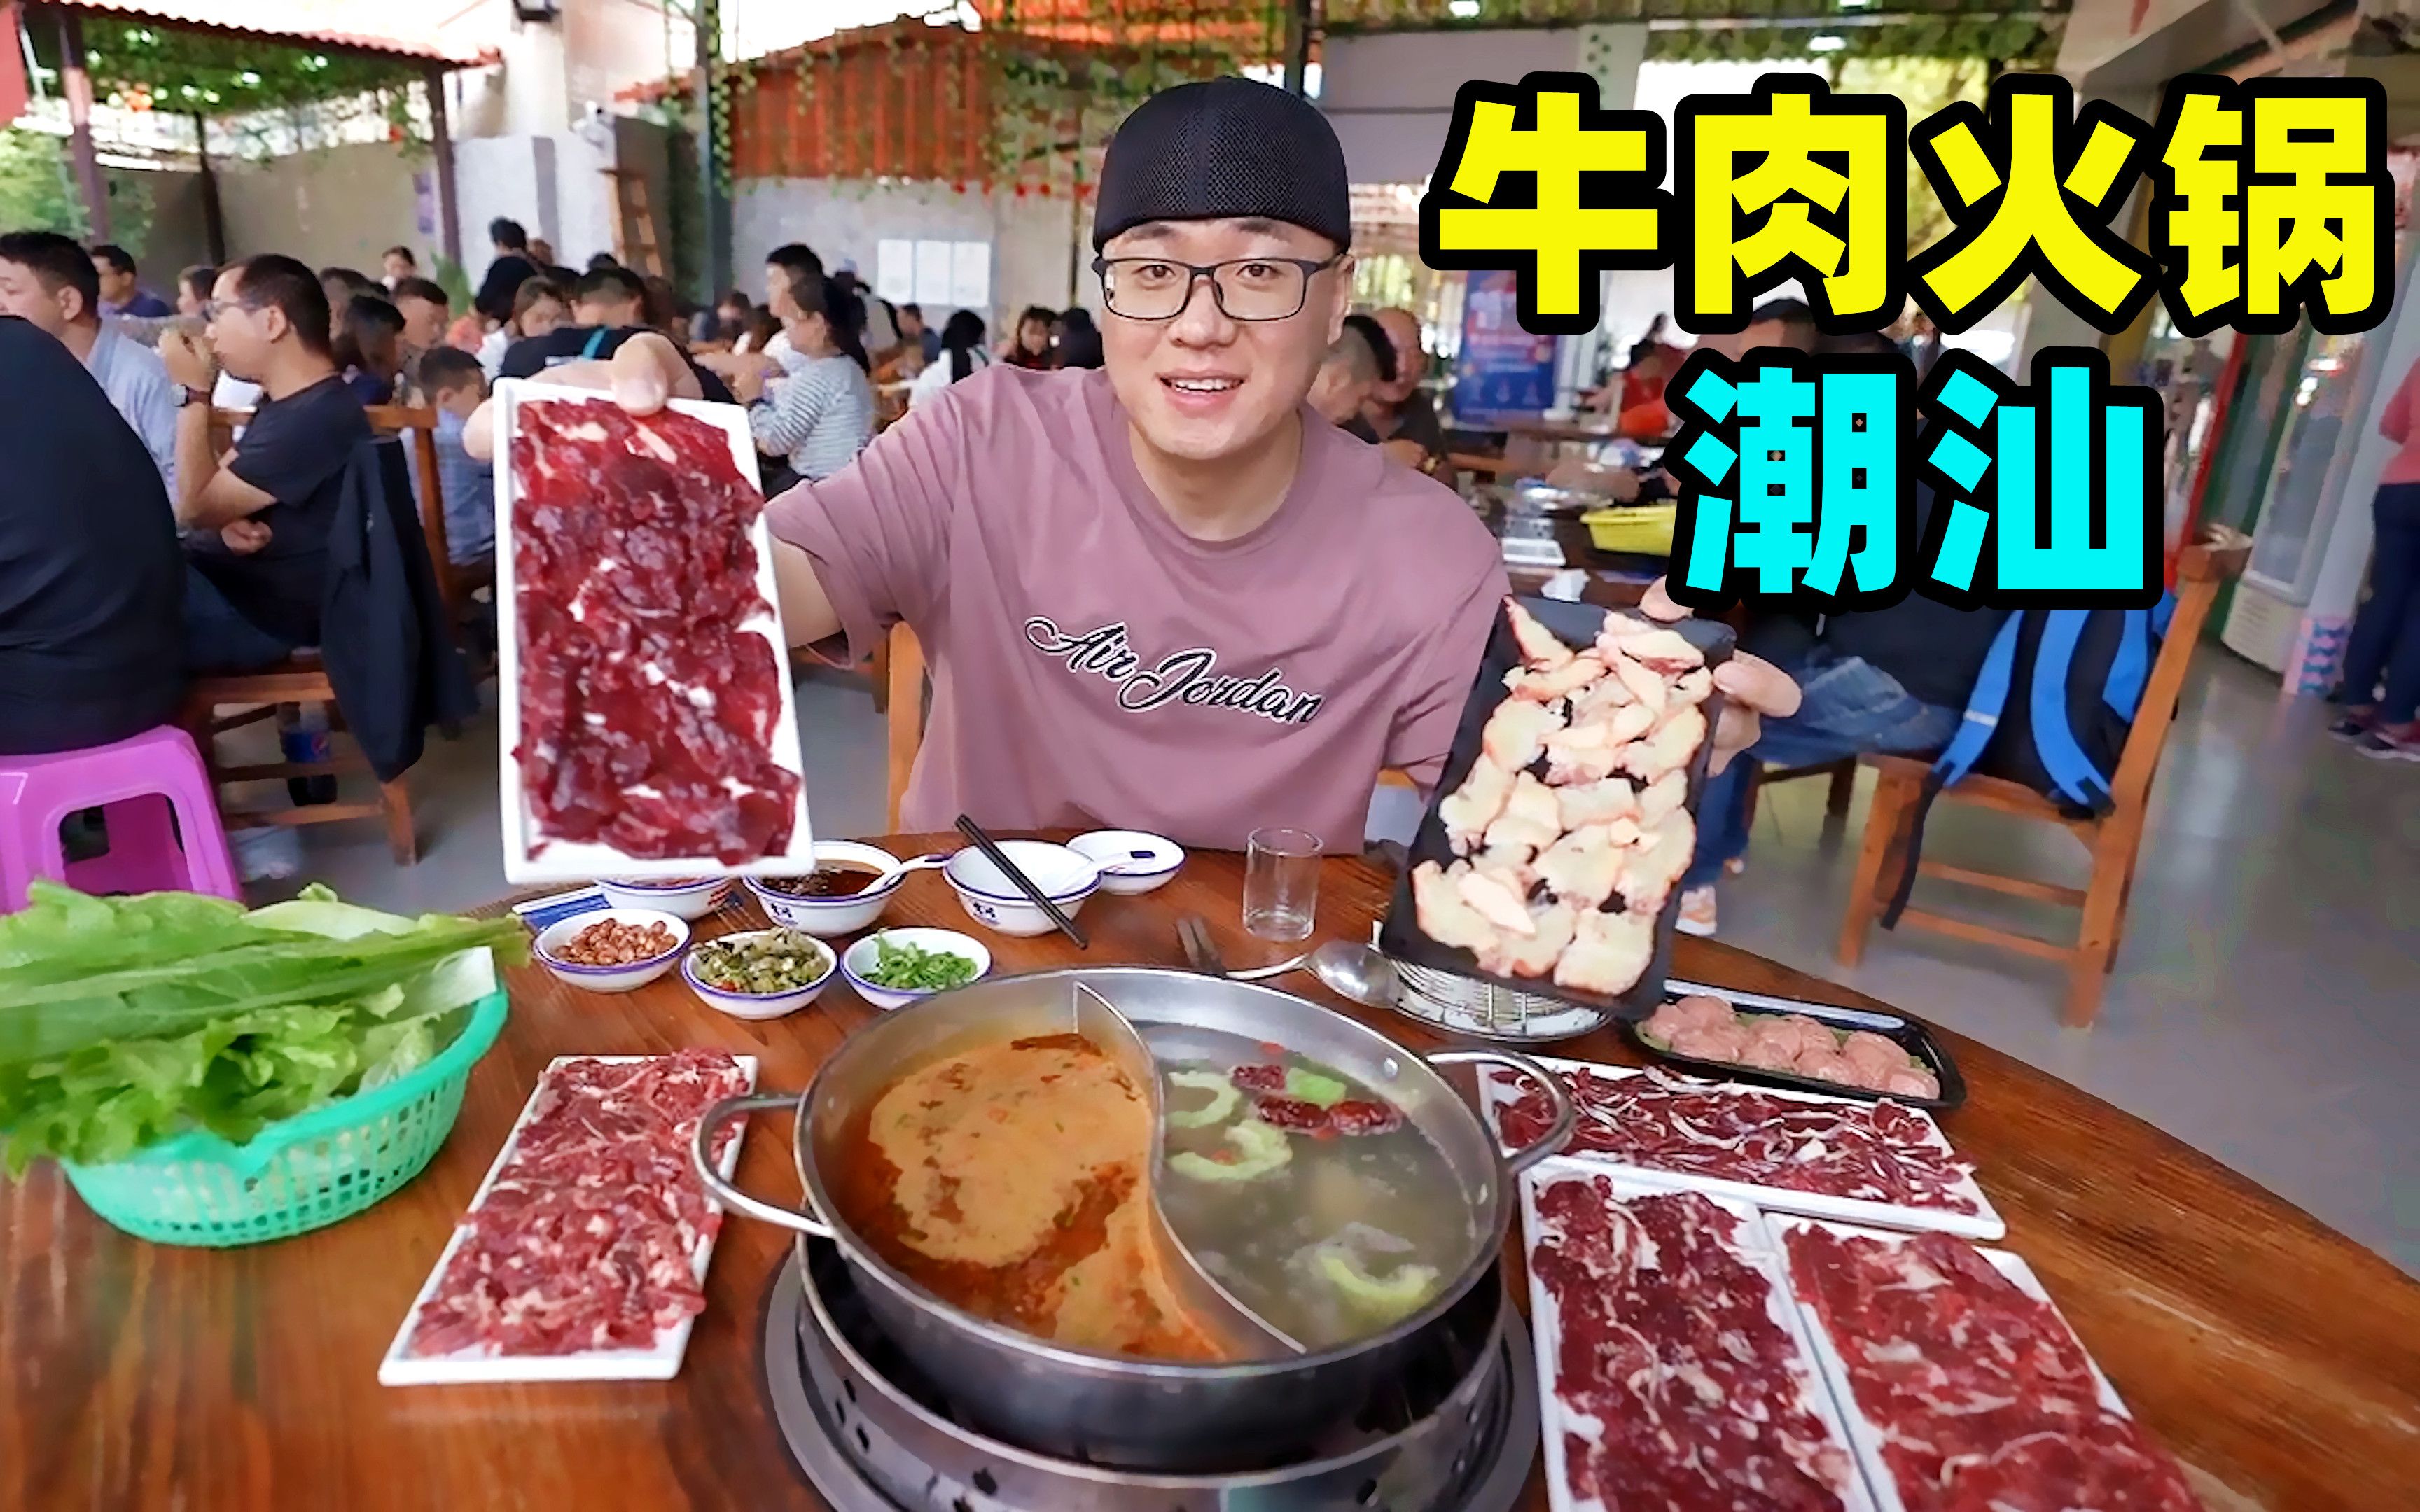 广东潮汕牛肉火锅，1头牛切十几个部位，鲜肉涮8秒，蘸沙茶酱浓郁